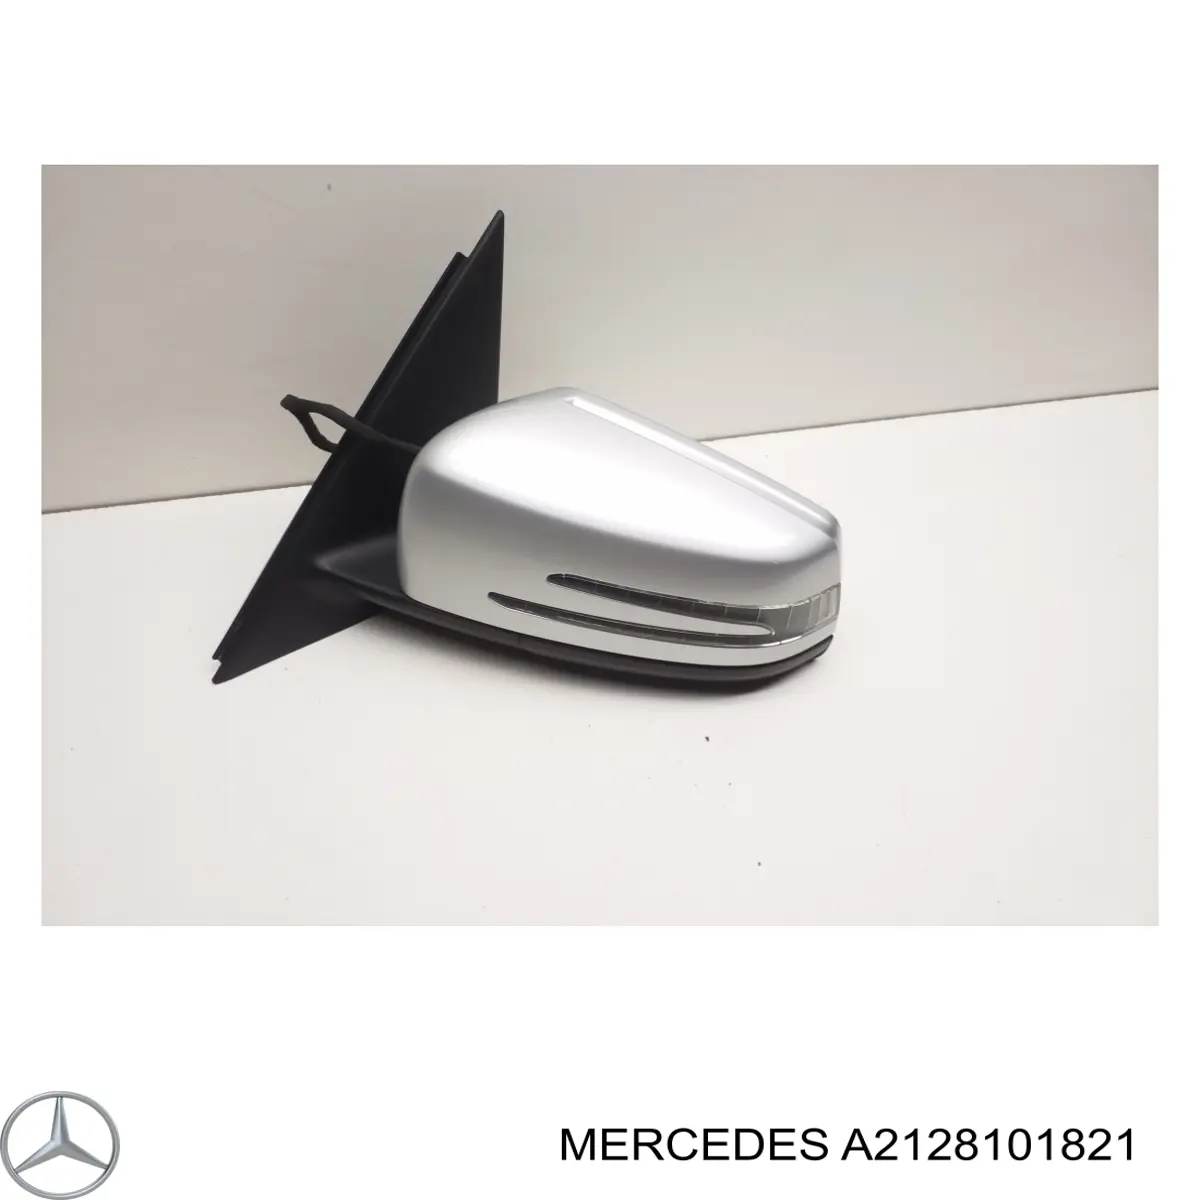 A2128101821 Mercedes cristal de espejo retrovisor exterior izquierdo